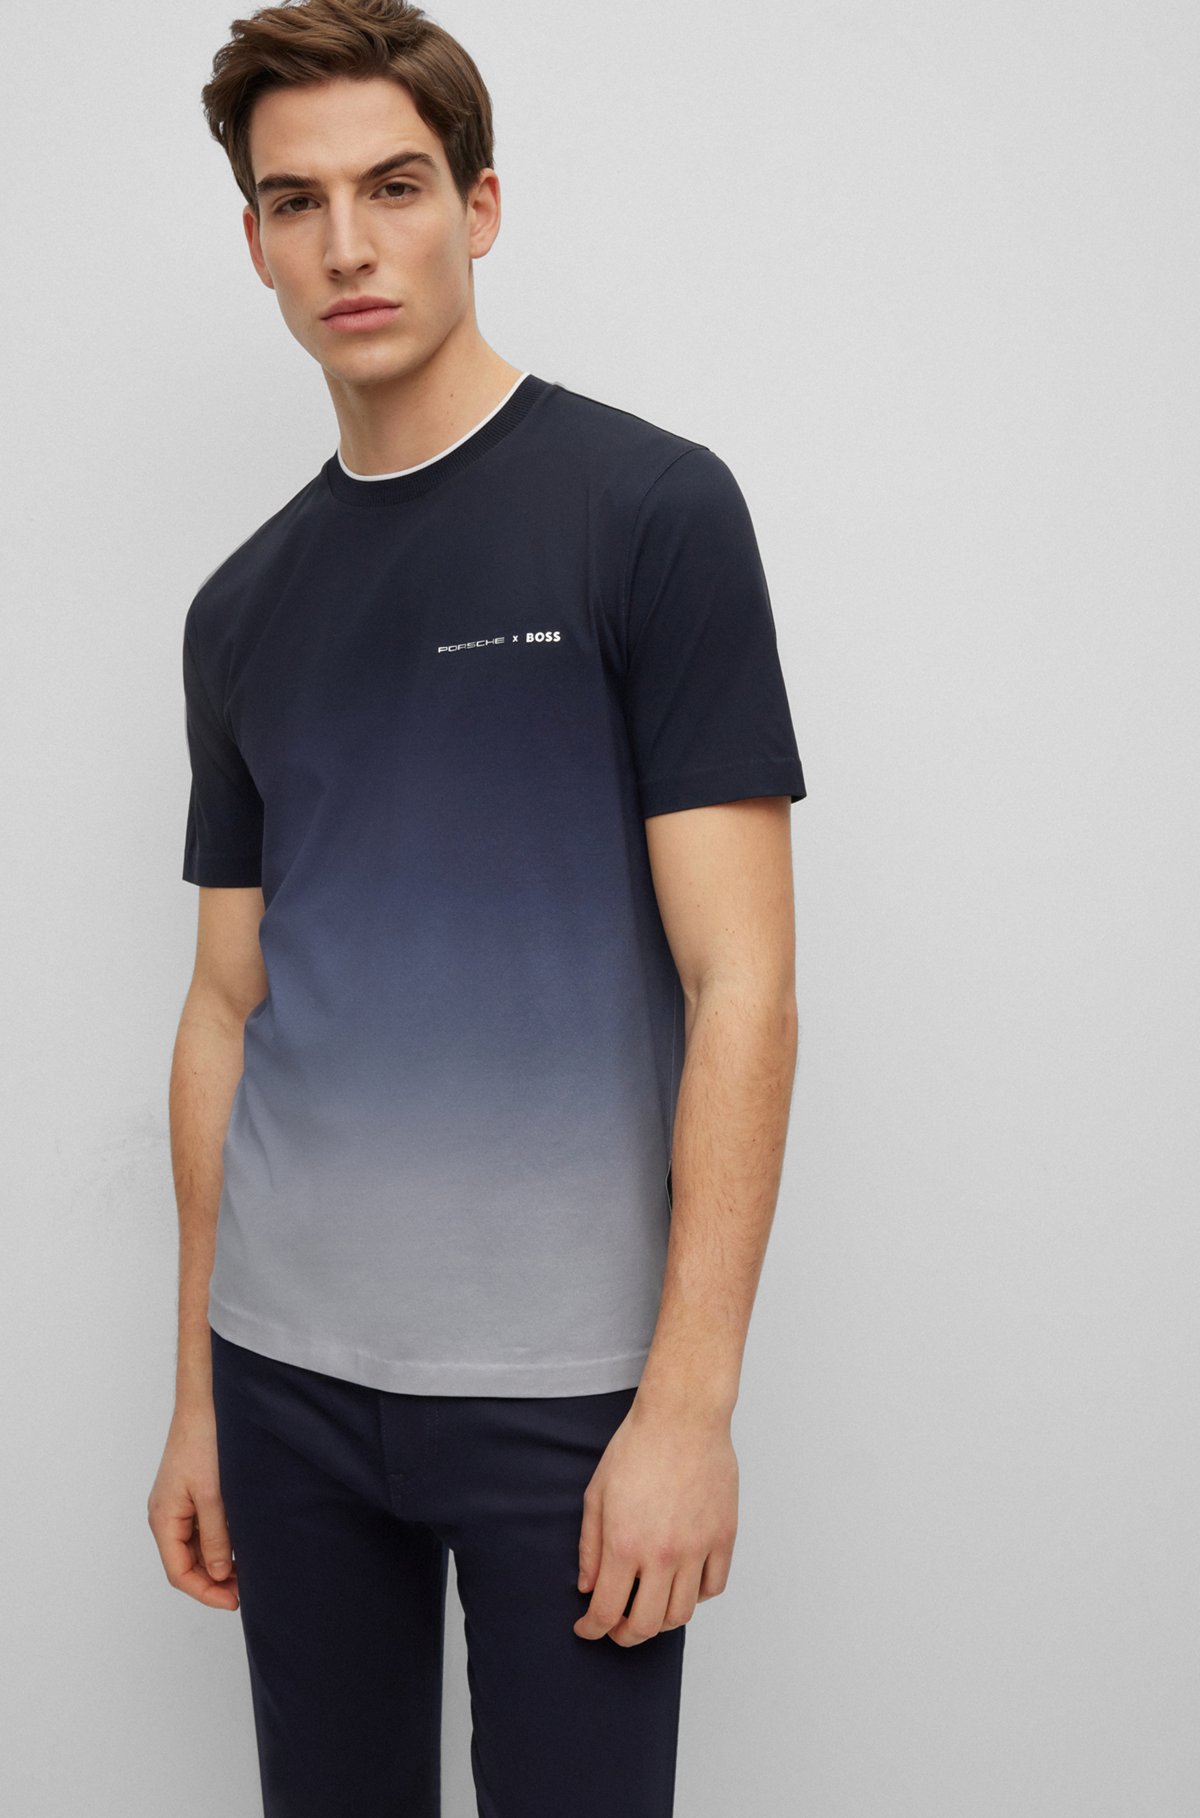 Porsche x BOSS stretch-cotton T-shirt with degradé print, Dark Blue